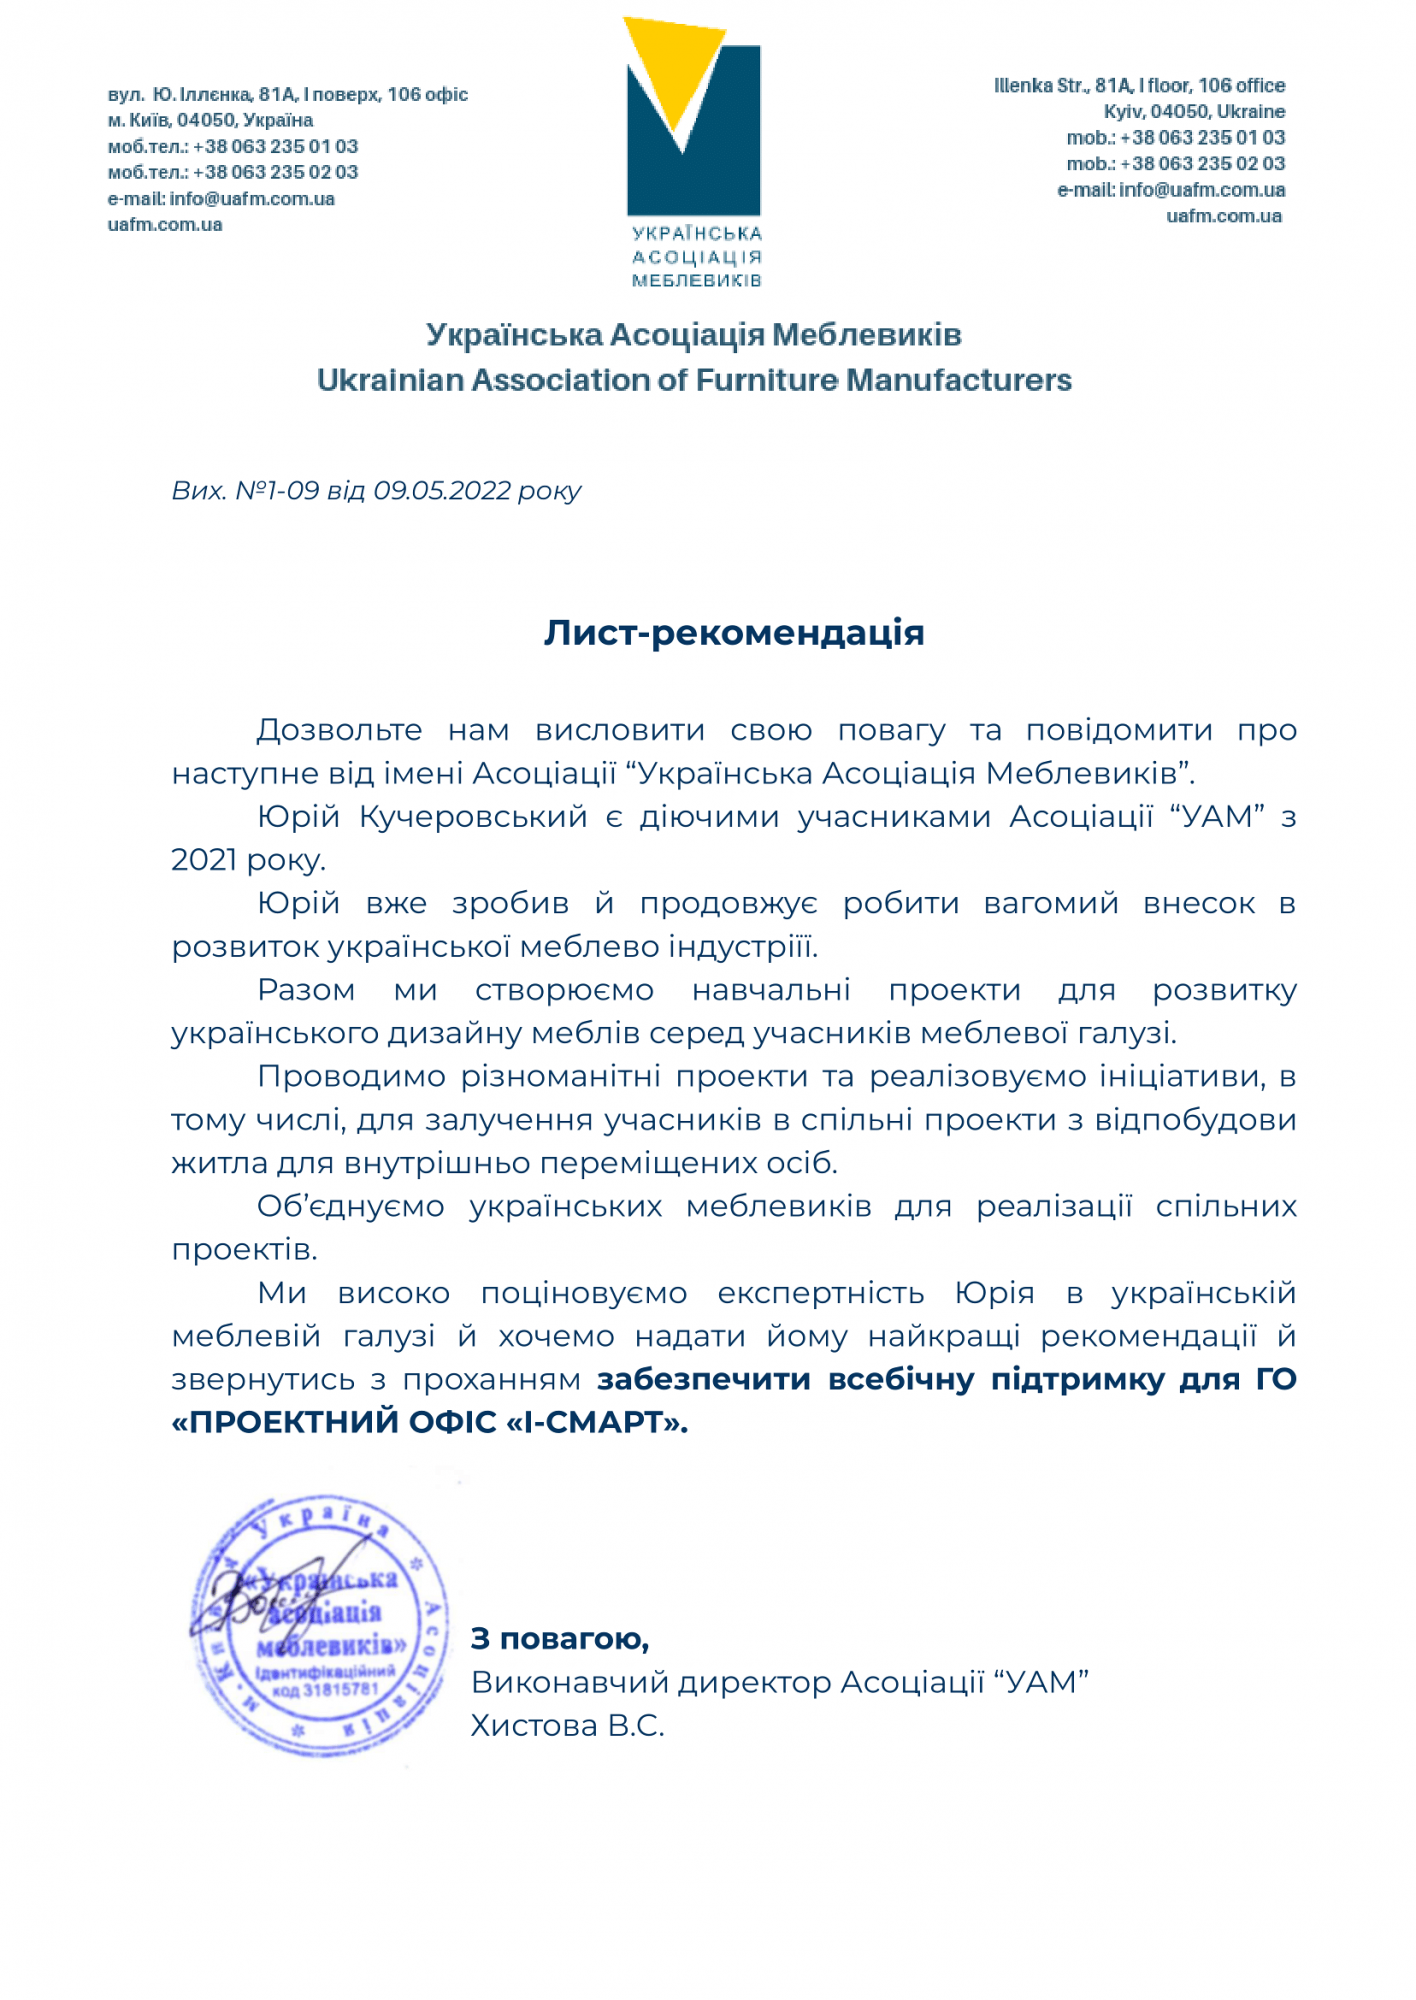 Отримали рекомендаційний лист від Української Асоціації Меблевиків. Дякуємо за довіру.